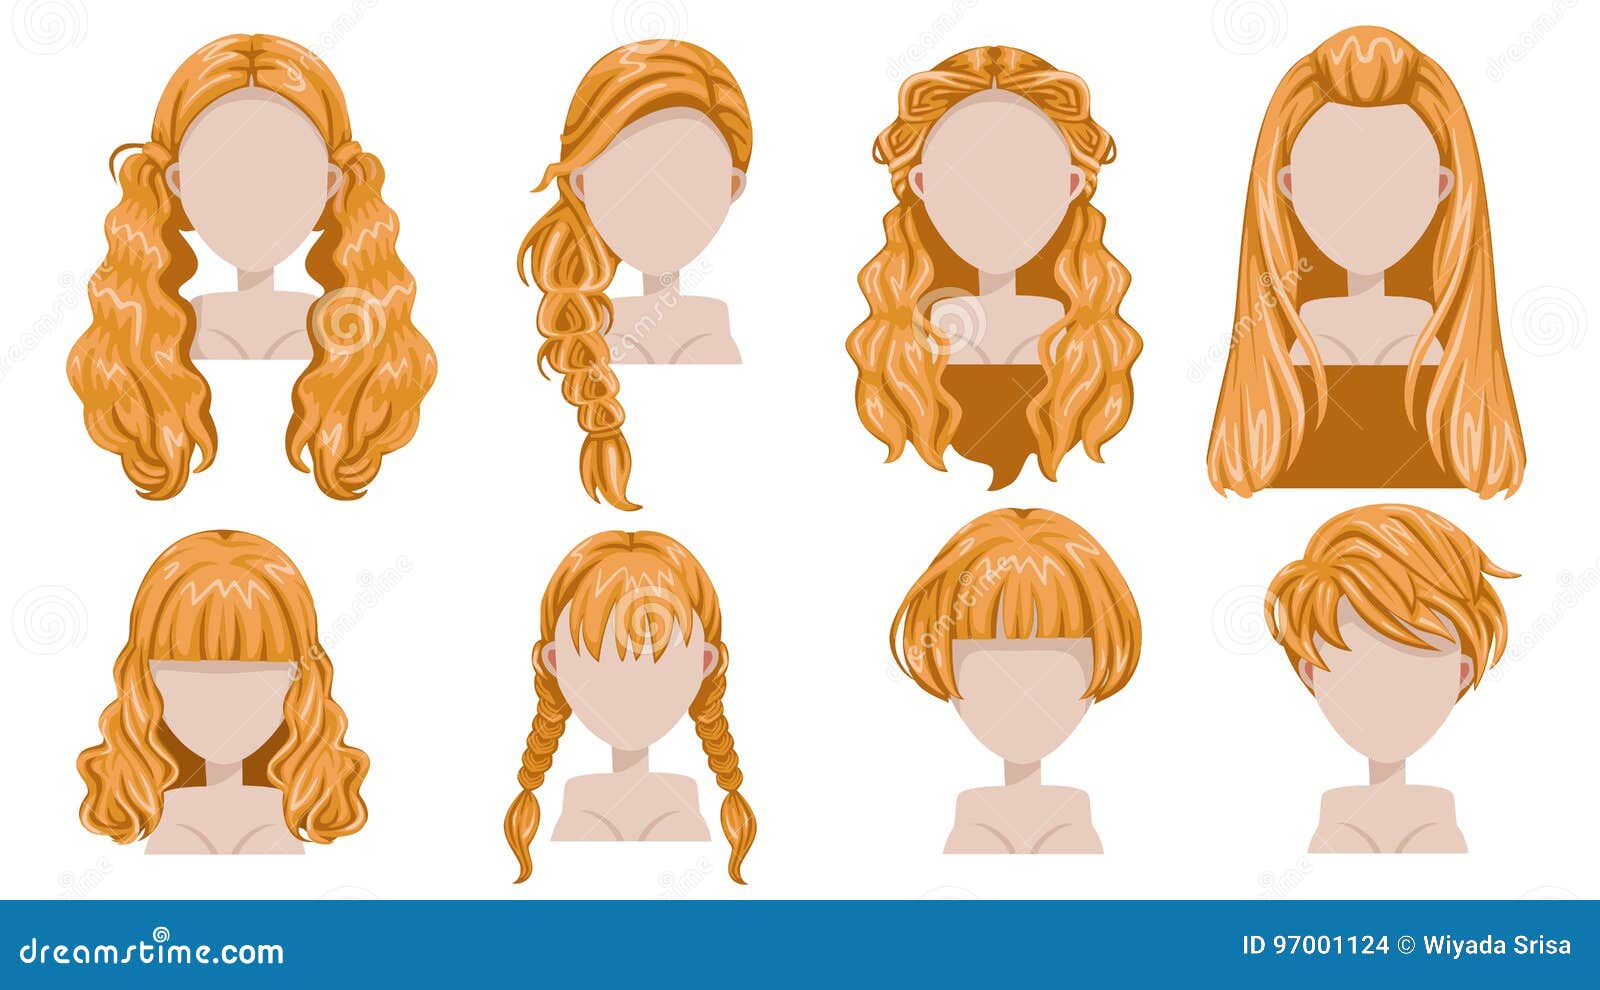 Cartoon Blonde Hair Drawing - wide 1